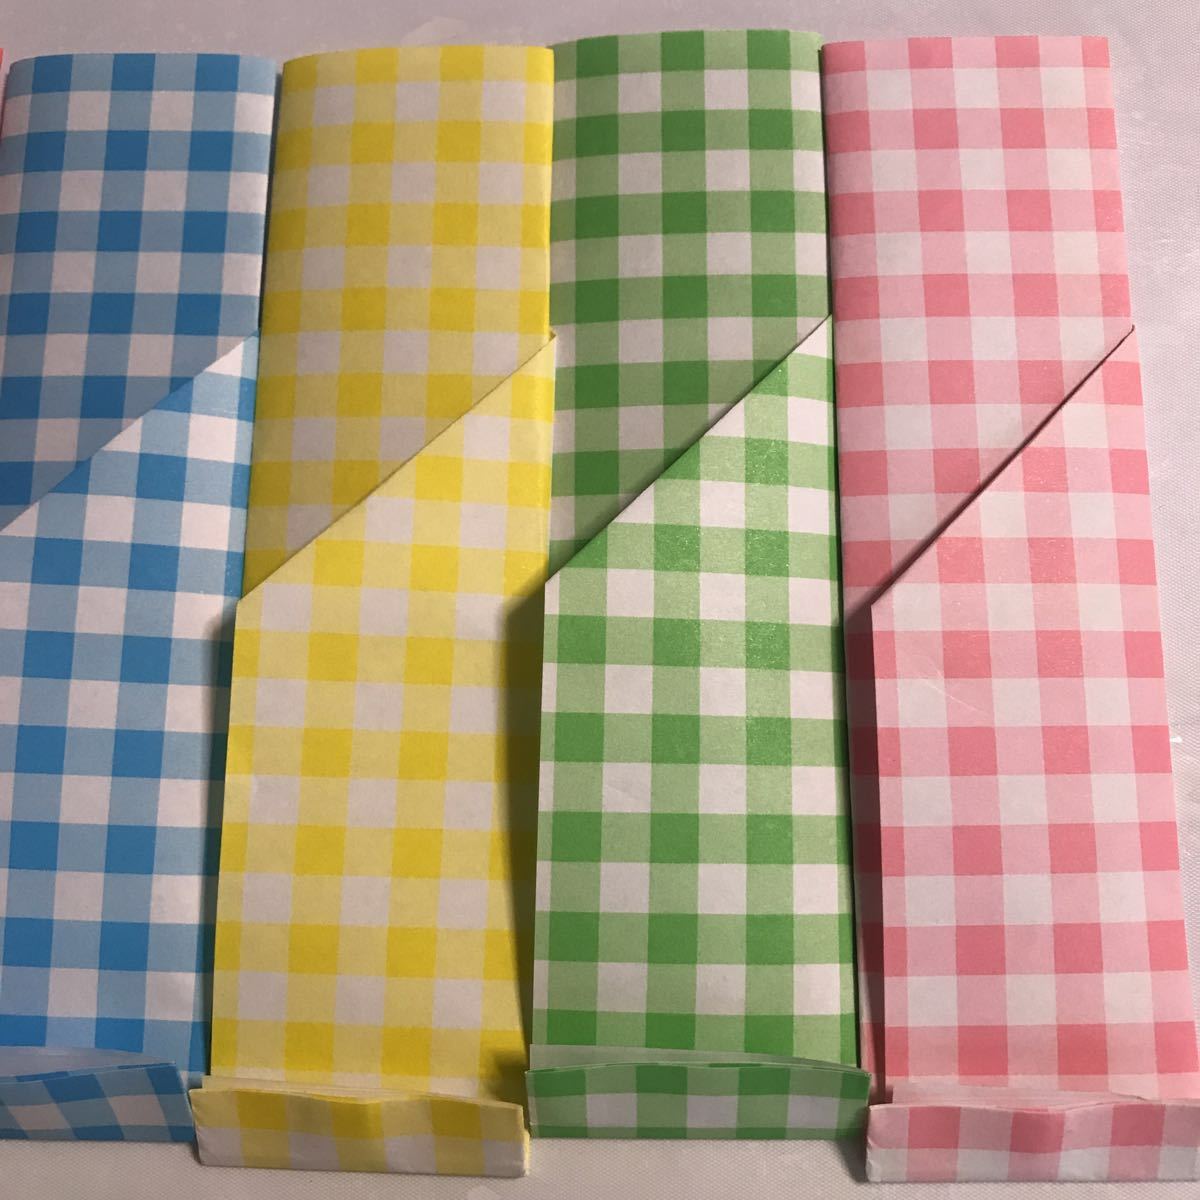 箸袋 箸入れ 折り紙 おもてなし 5個 オシャレ ハンドメイド ハンドクラフト 食卓彩り カラーチェック_画像6